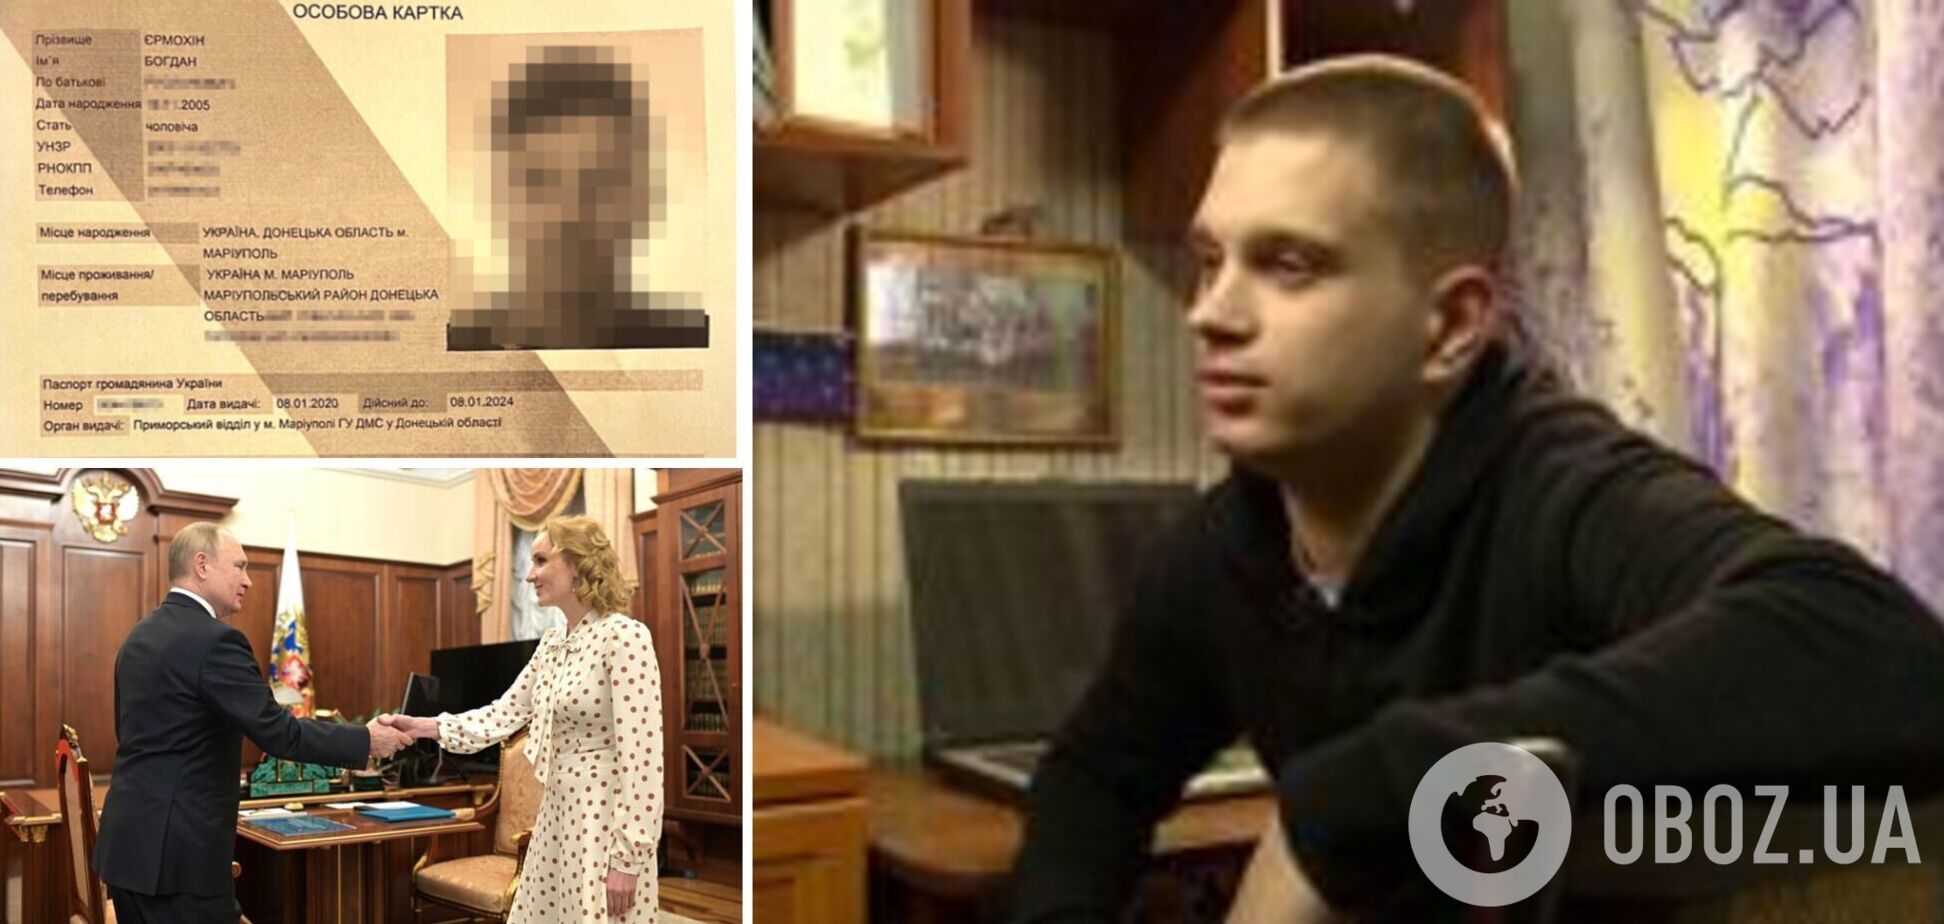 Український підліток, якого незаконно вивезли до РФ, утік додому: але його спіймали та повернули назад